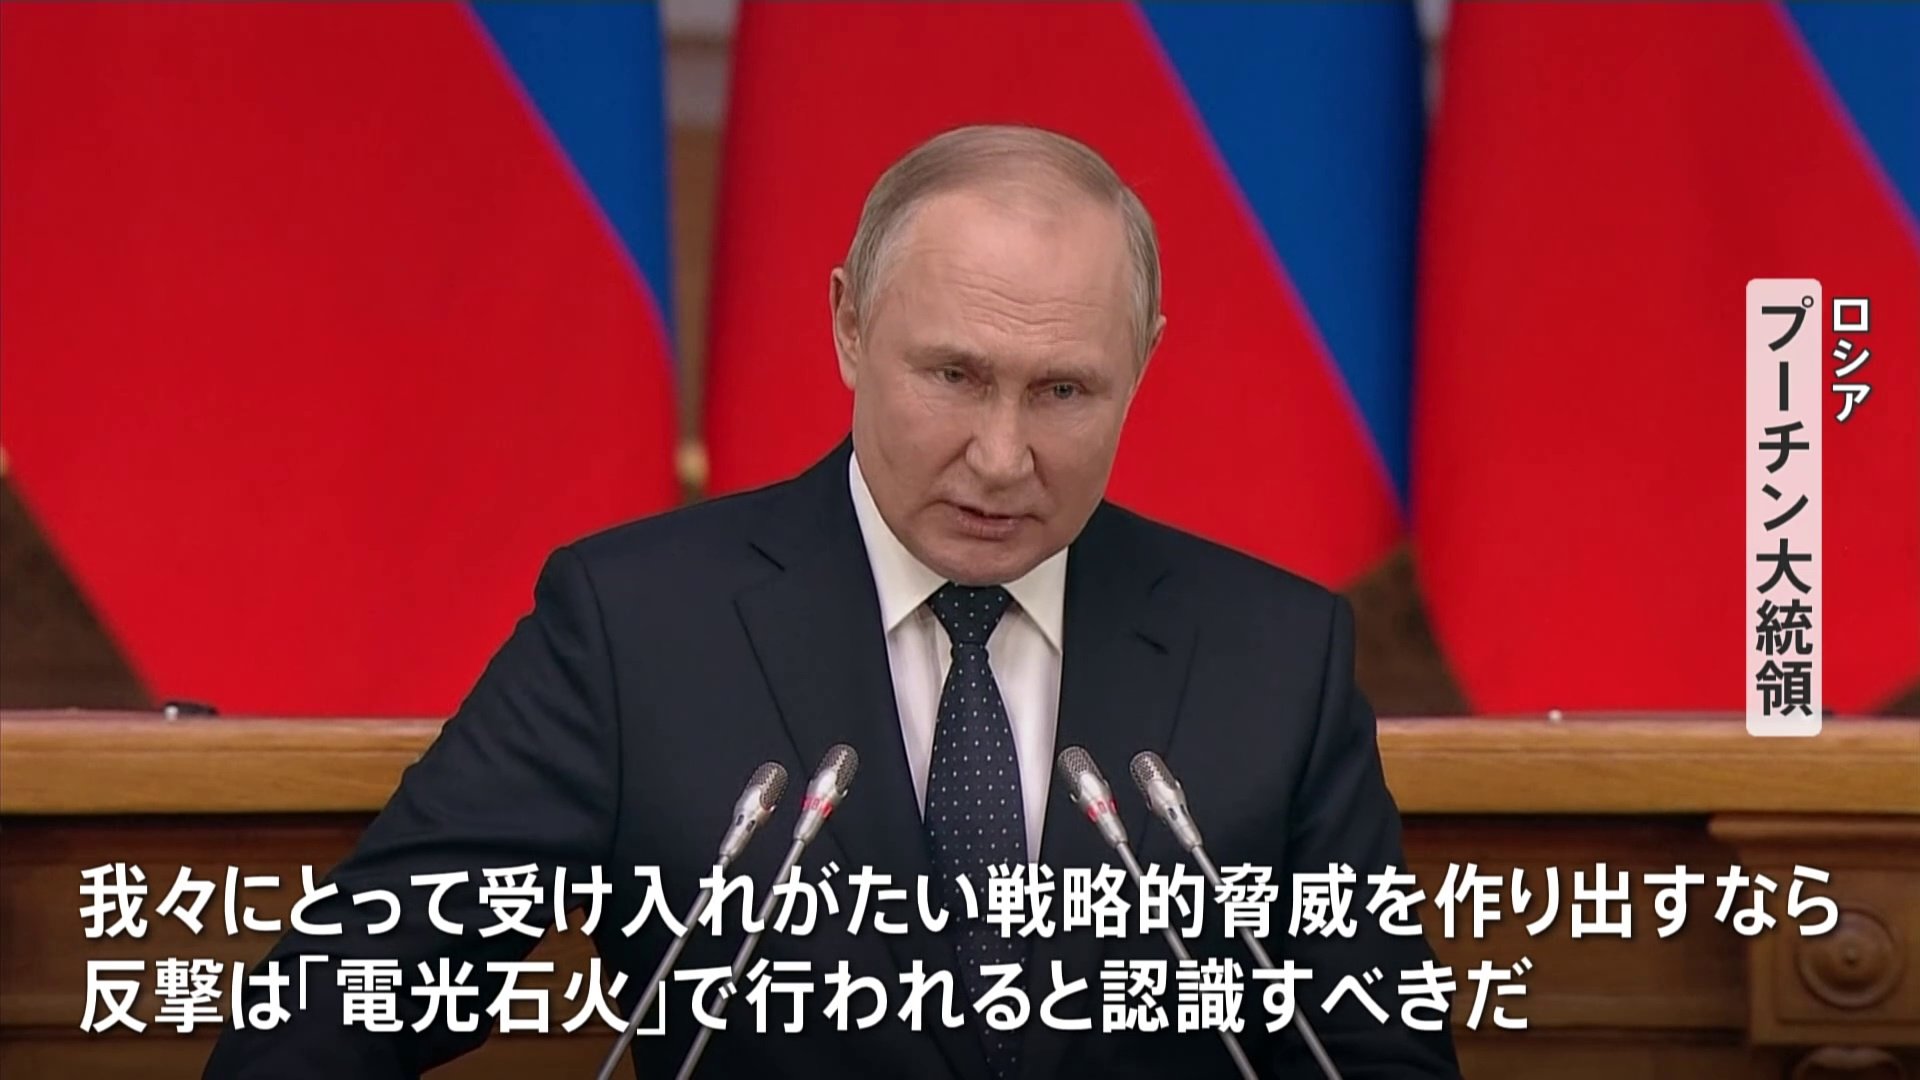 「反撃は電光石火で」 プーチン大統領が“核使用”示唆し欧米を強くけん制